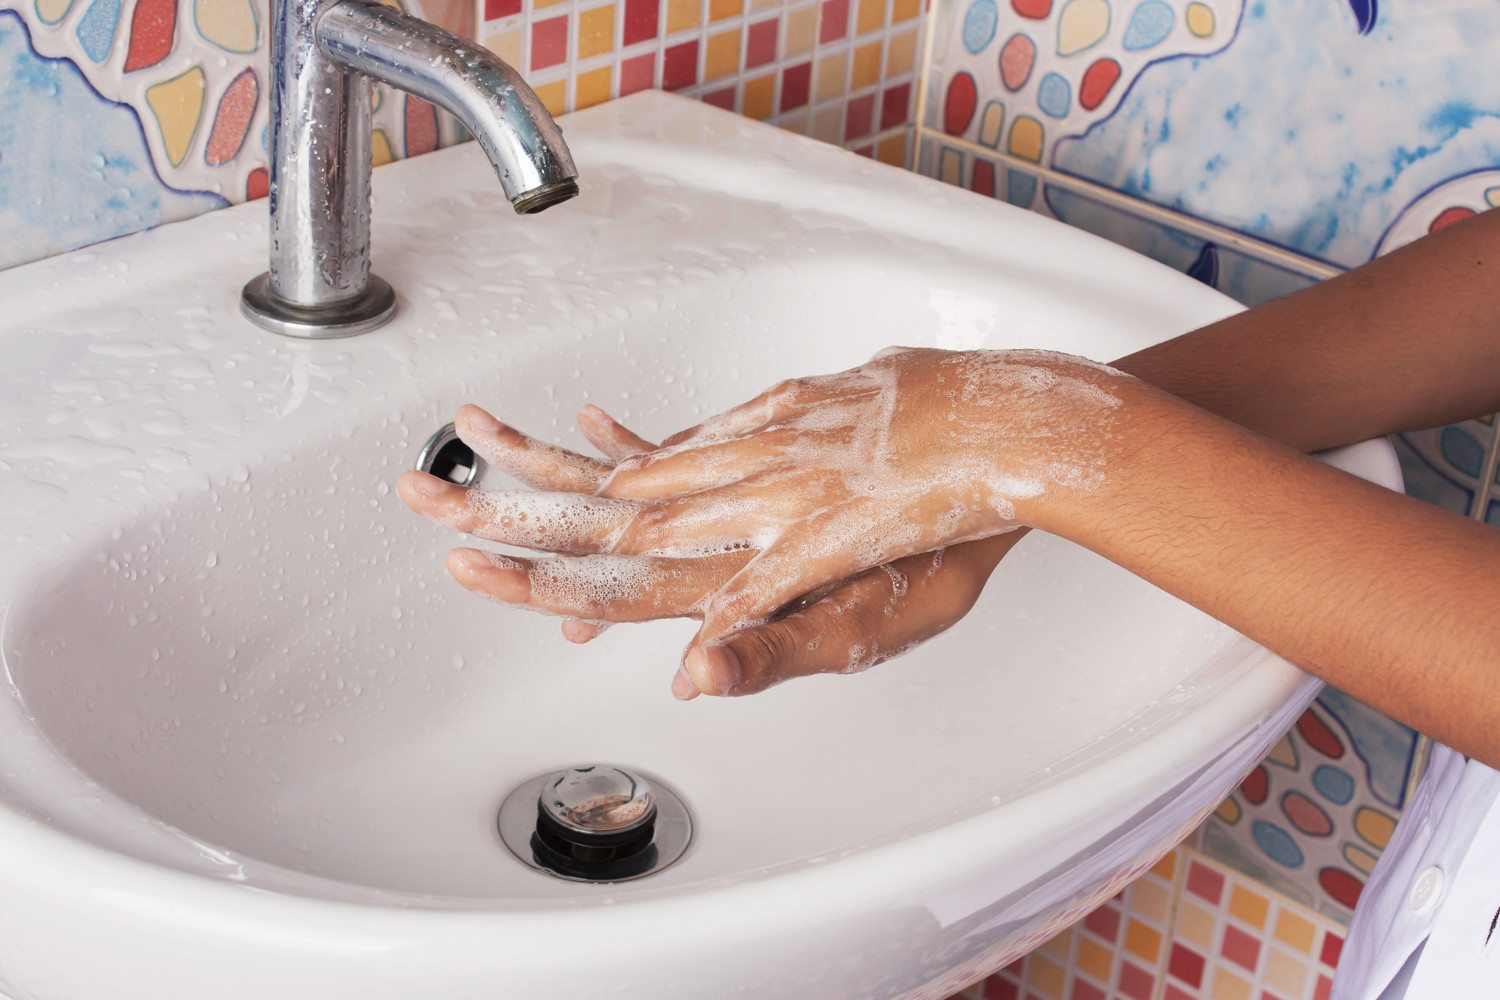 Можно помыть руки. Мытье рук. Мытье под краном. Раковина для рук. Мытье рук под краном.